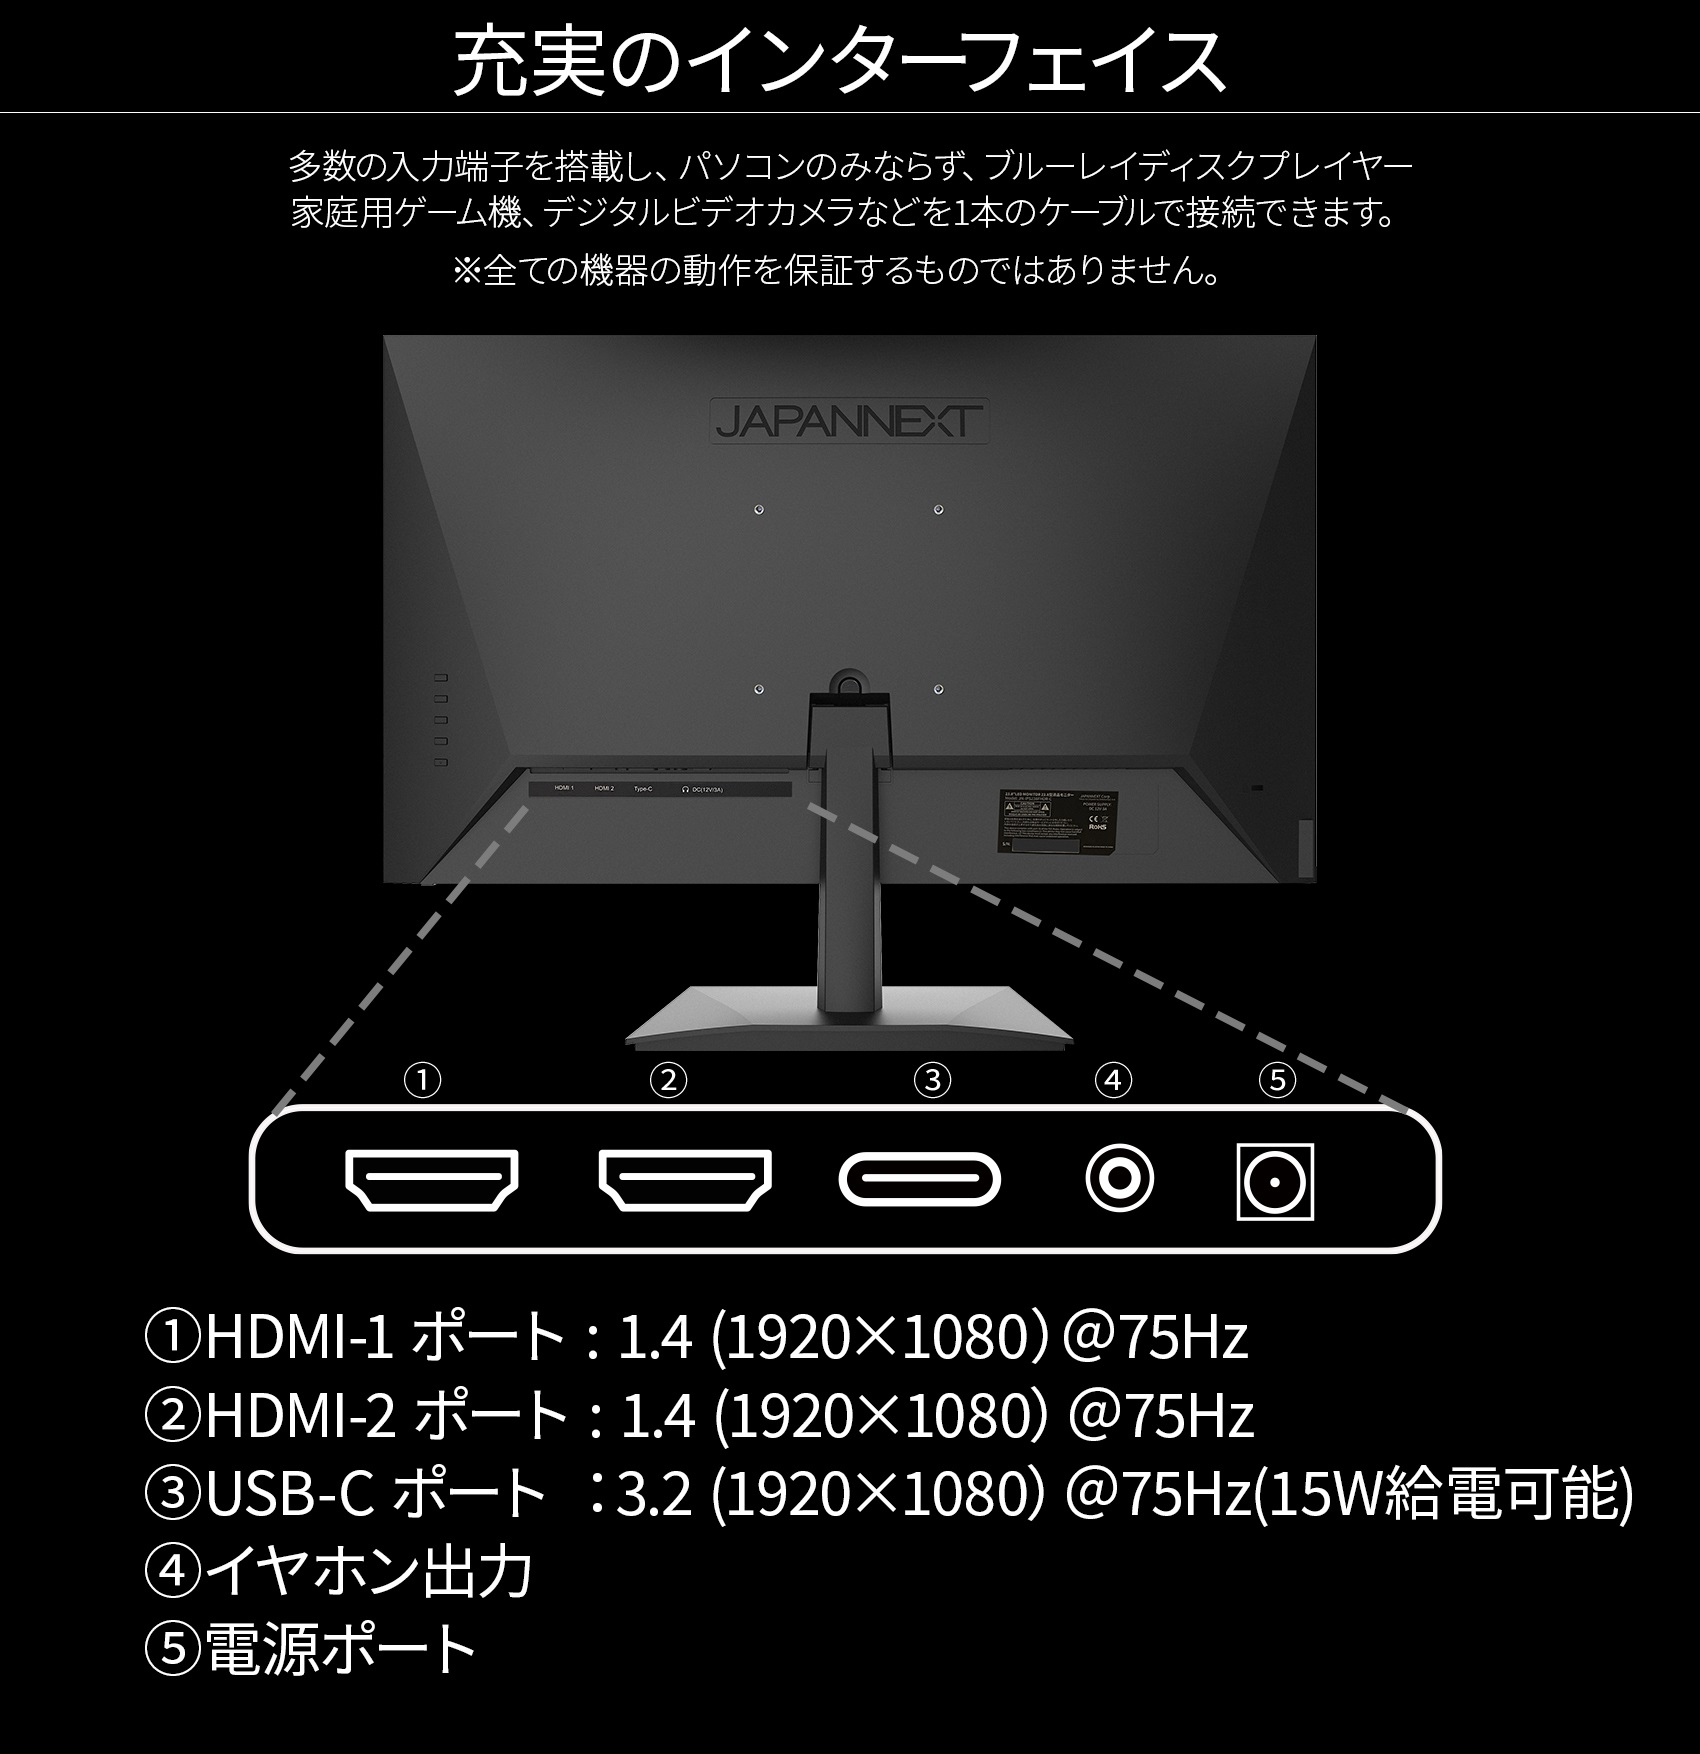 JAPANNEXT 23.8型IPSフルHDパネル搭載